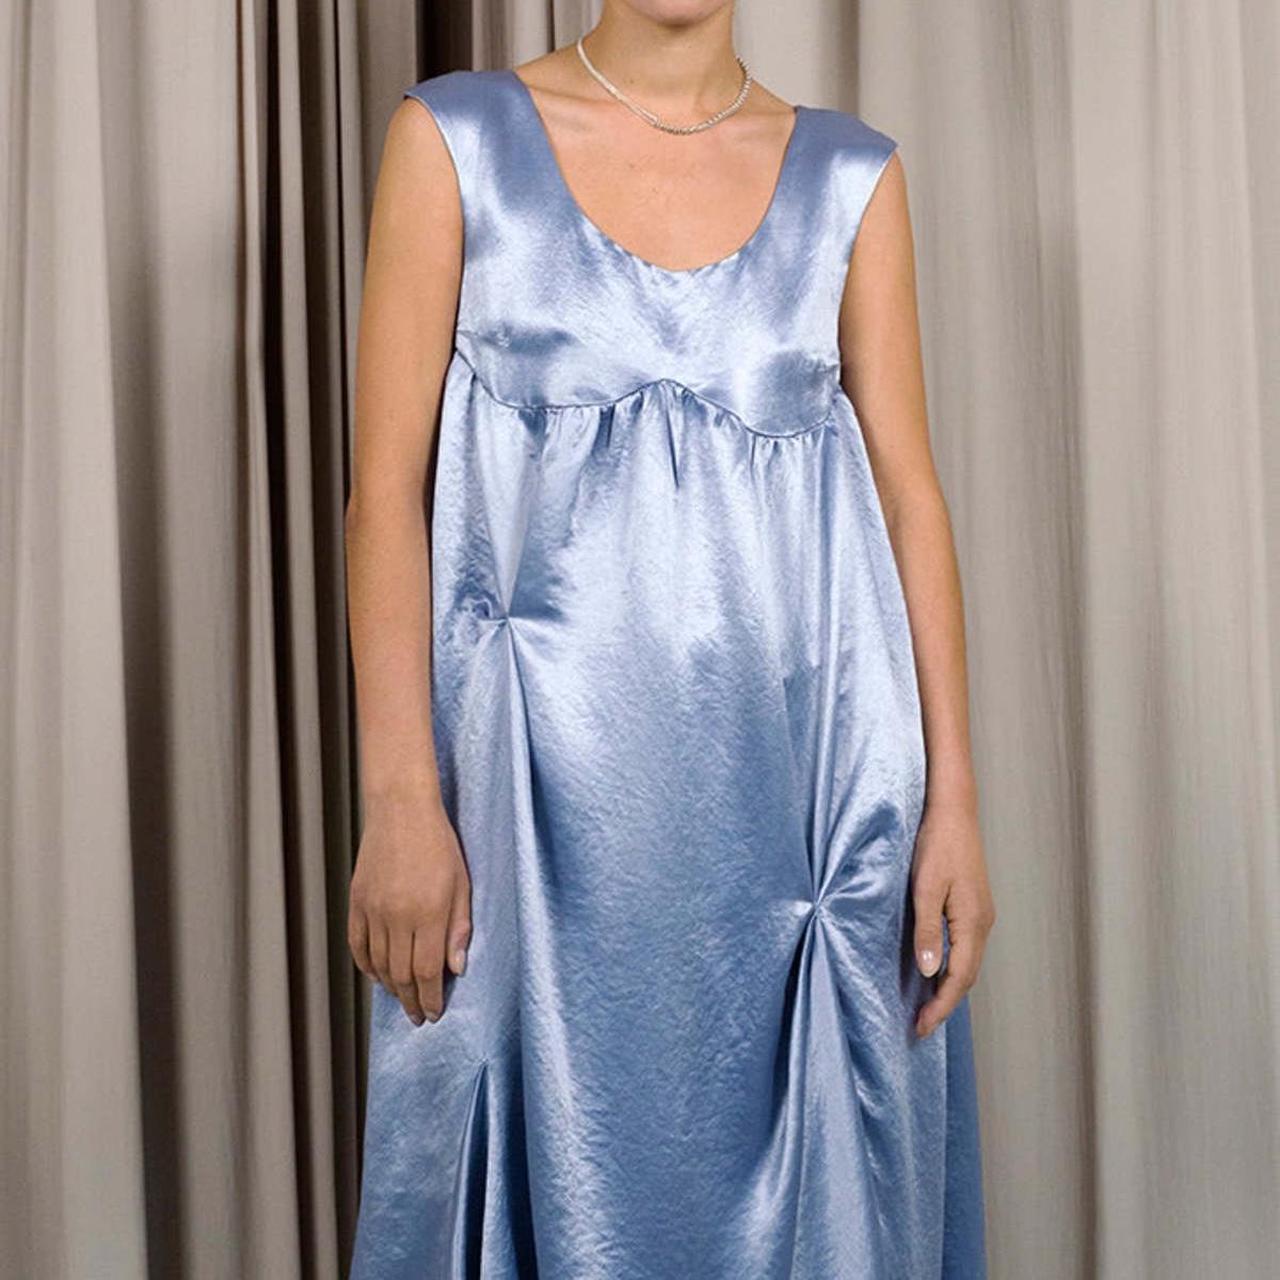 Eckhaus Latta Women's Blue and Grey Dress